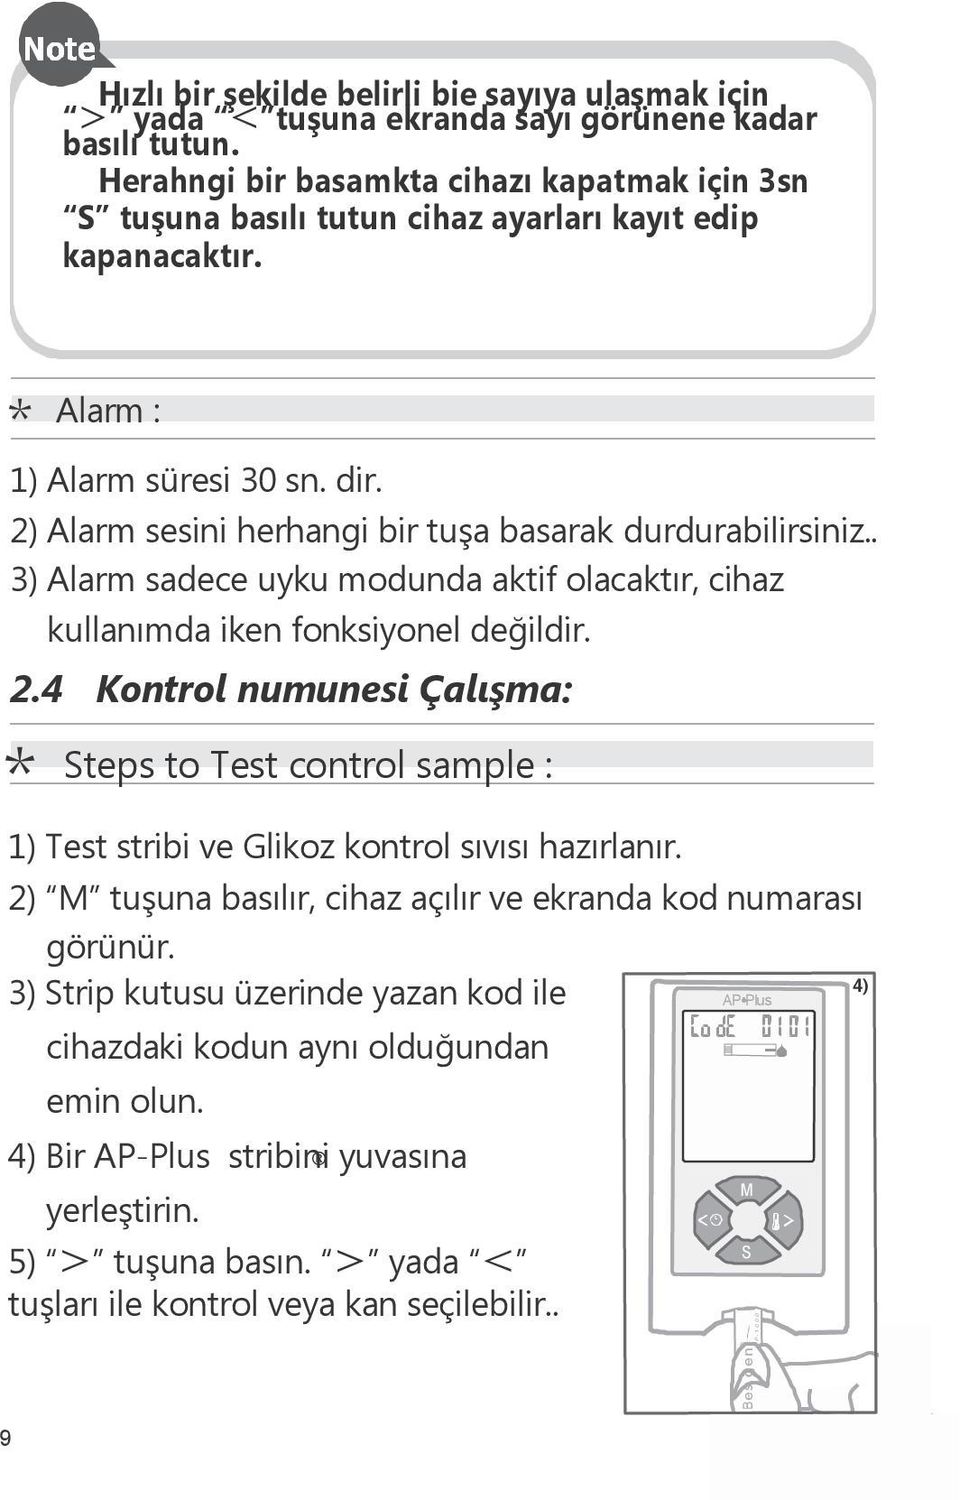 2) Alarm sesini herhangi bir tuşa basarak durdurabilirsiniz.. 3) Alarm sadece uyku modunda aktif olacaktır, cihaz kullanımda iken fonksiyonel değildir. 2.